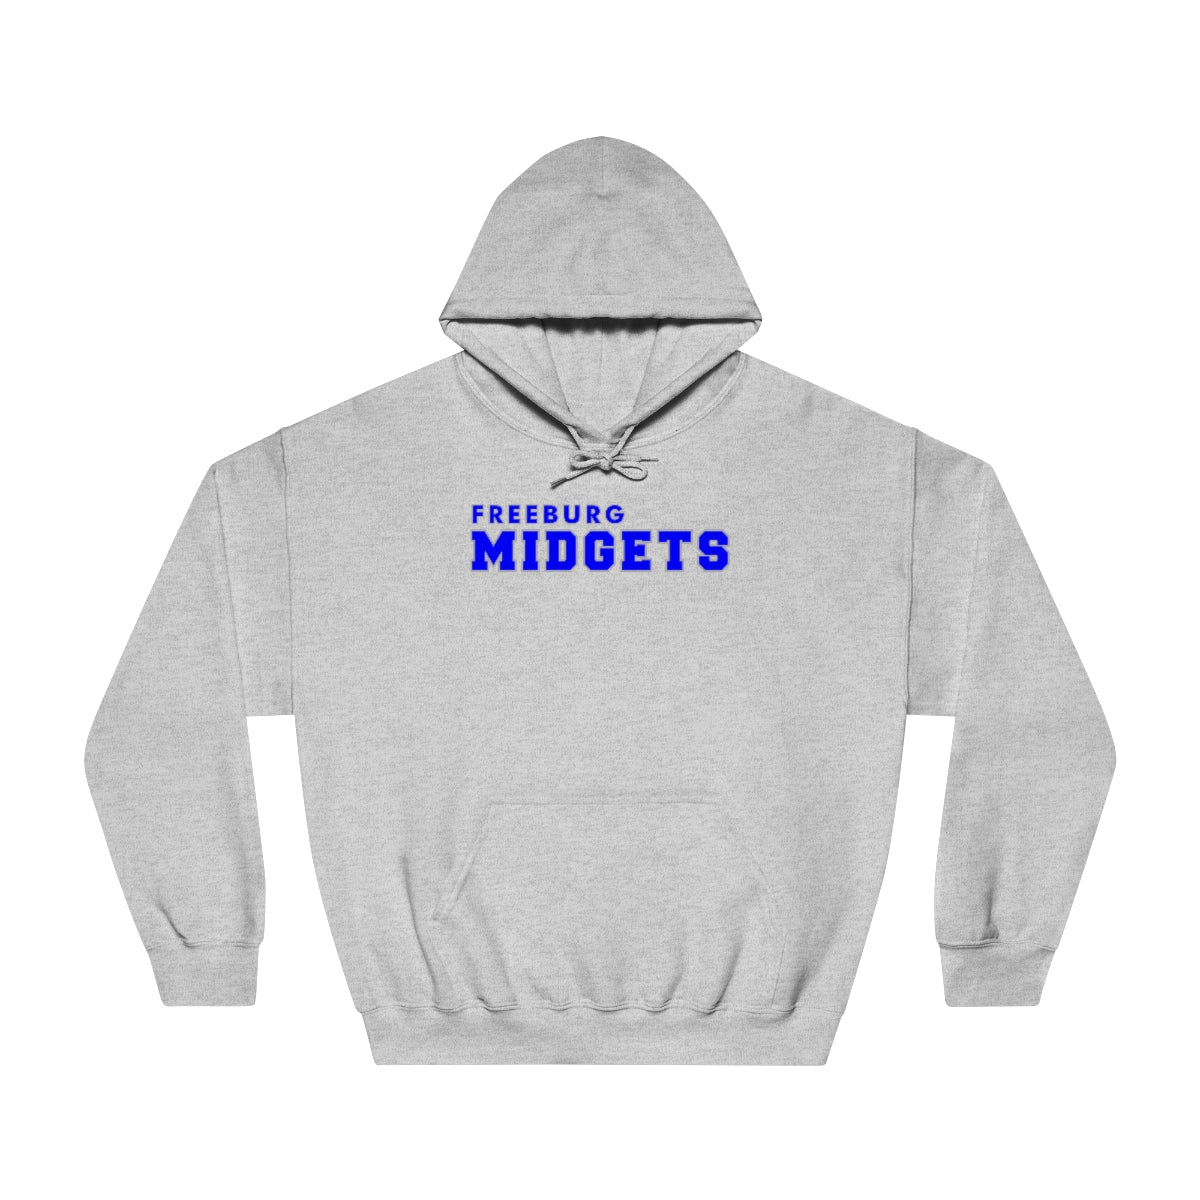 Freeburg Midgets Unisex DryBlend® Hooded Sweatshirt